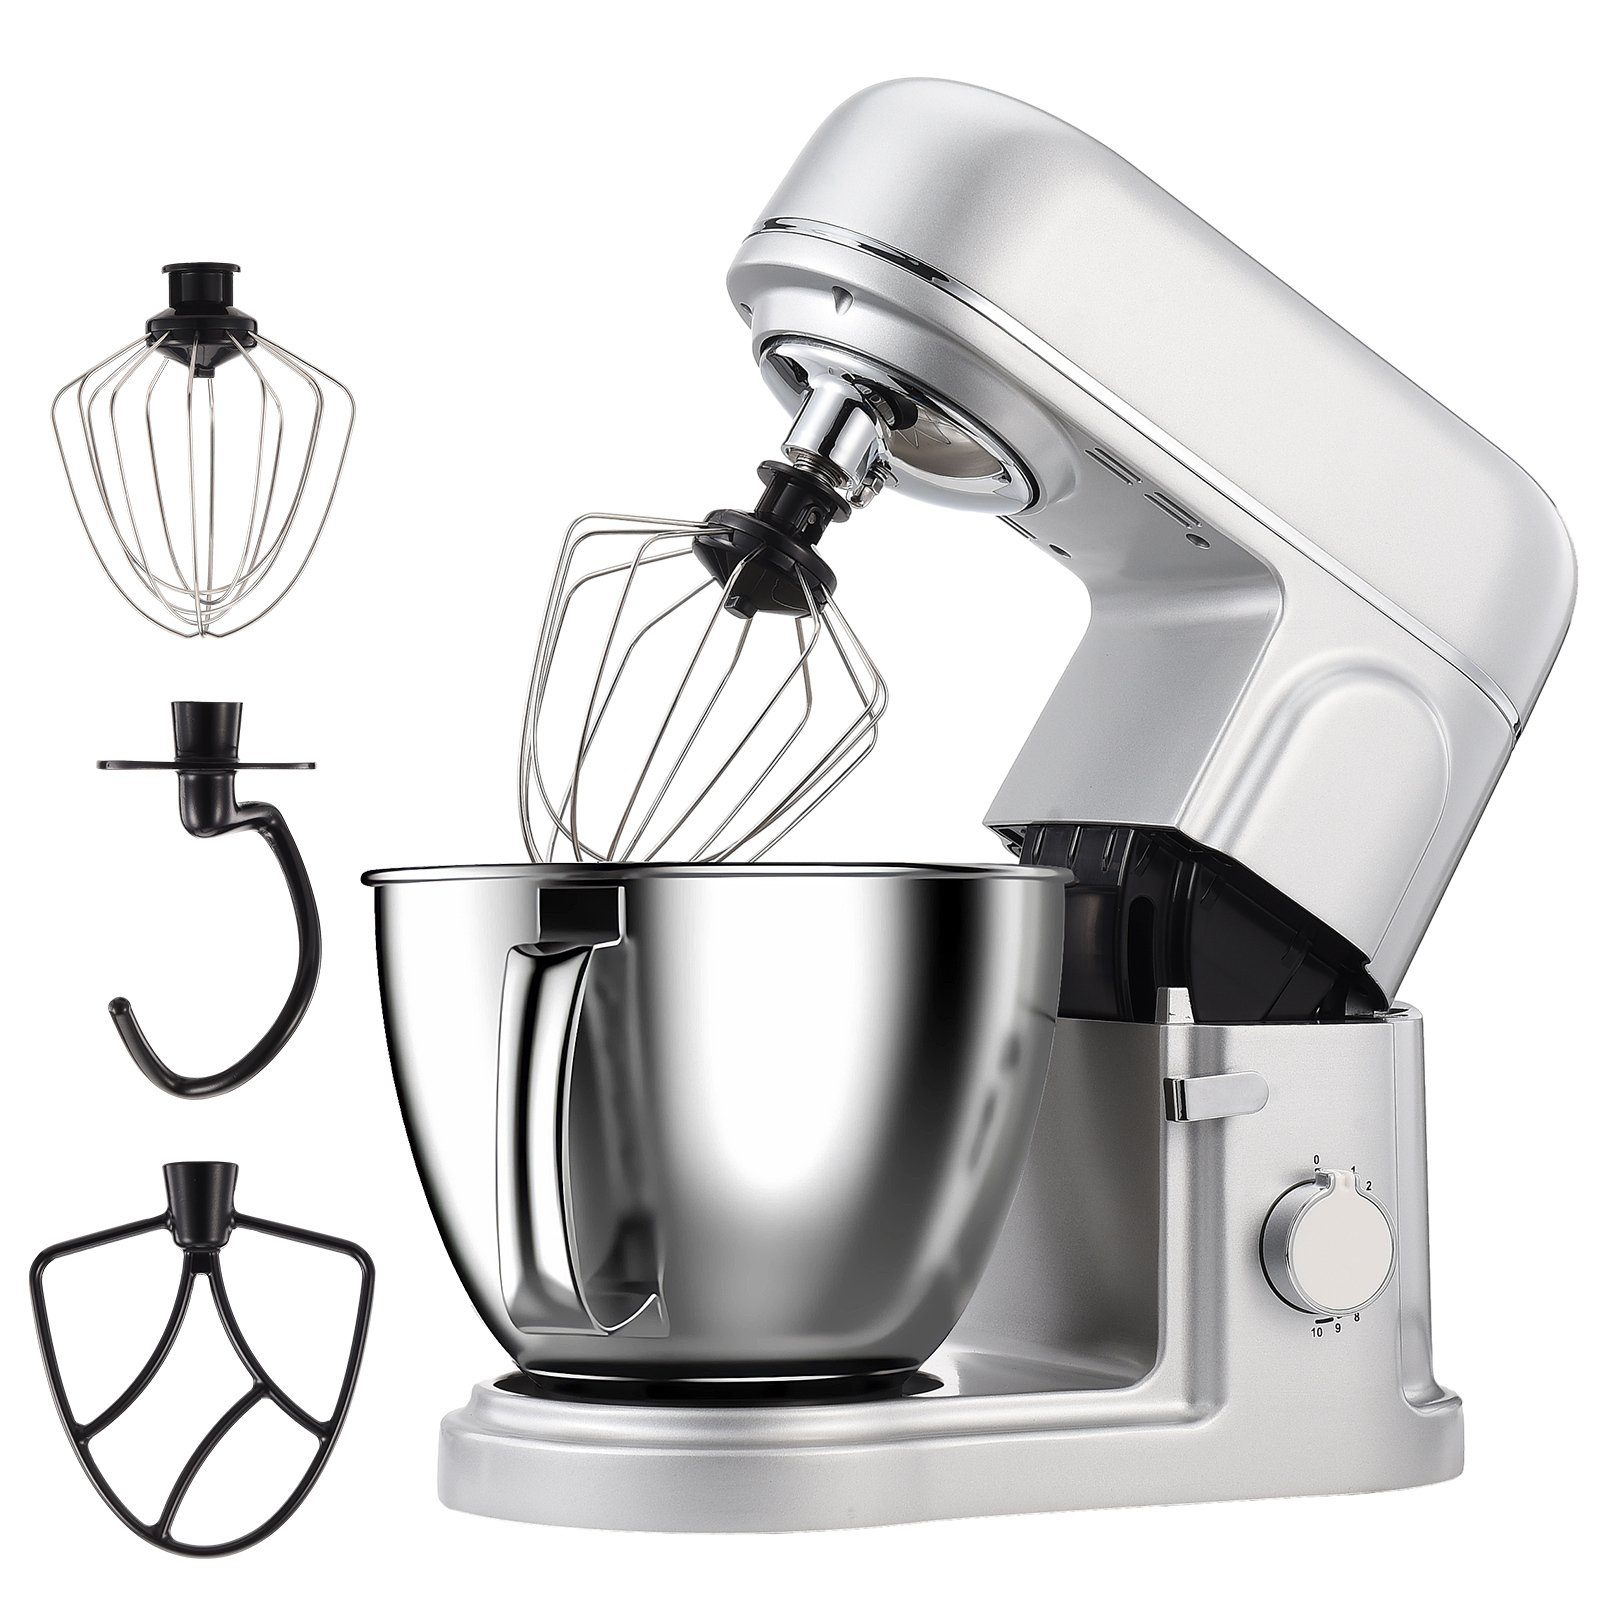 FUROKOY Küchenmaschine mit Kochfunktion Multifunktional Küchenmaschine Kleine Maschine Haushaltsgeräte Silber Mixer